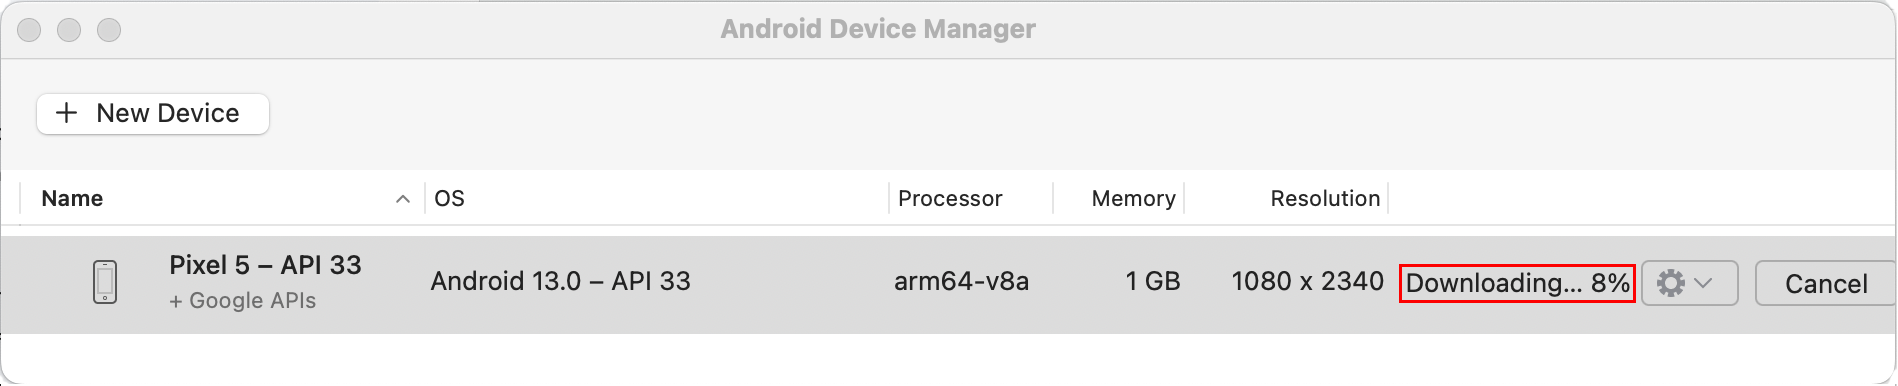 Google Pixel 5 モバイル デバイスのダウンロードの進行状況 8% を示す [Android デバイス マネージャー] ダイアログ。